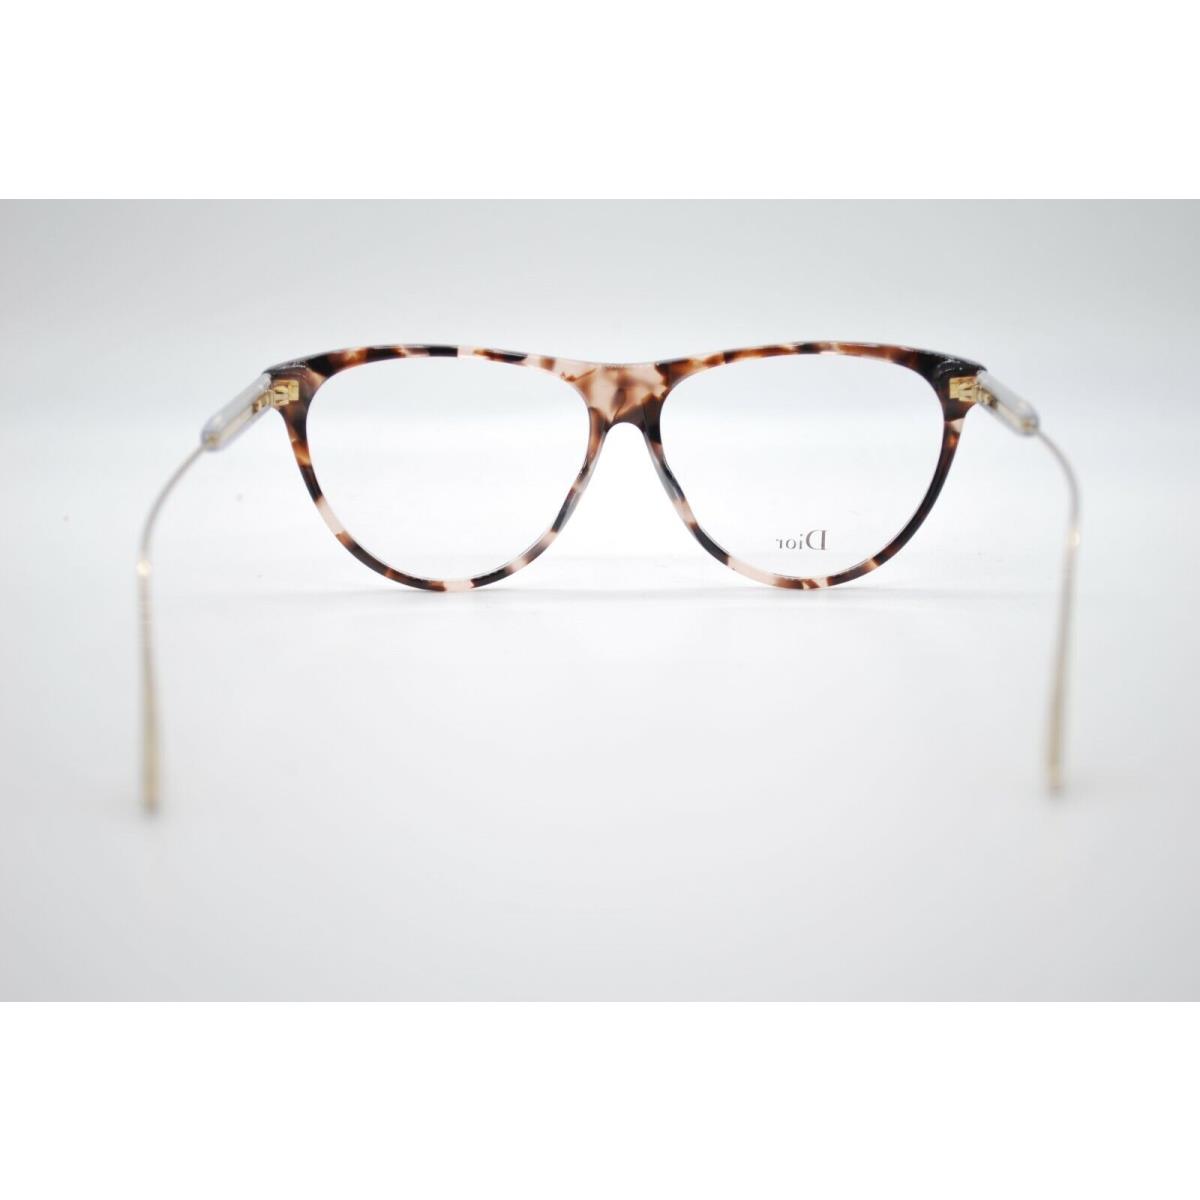 Dior eyeglasses  - PINK HAVANA Frame 3